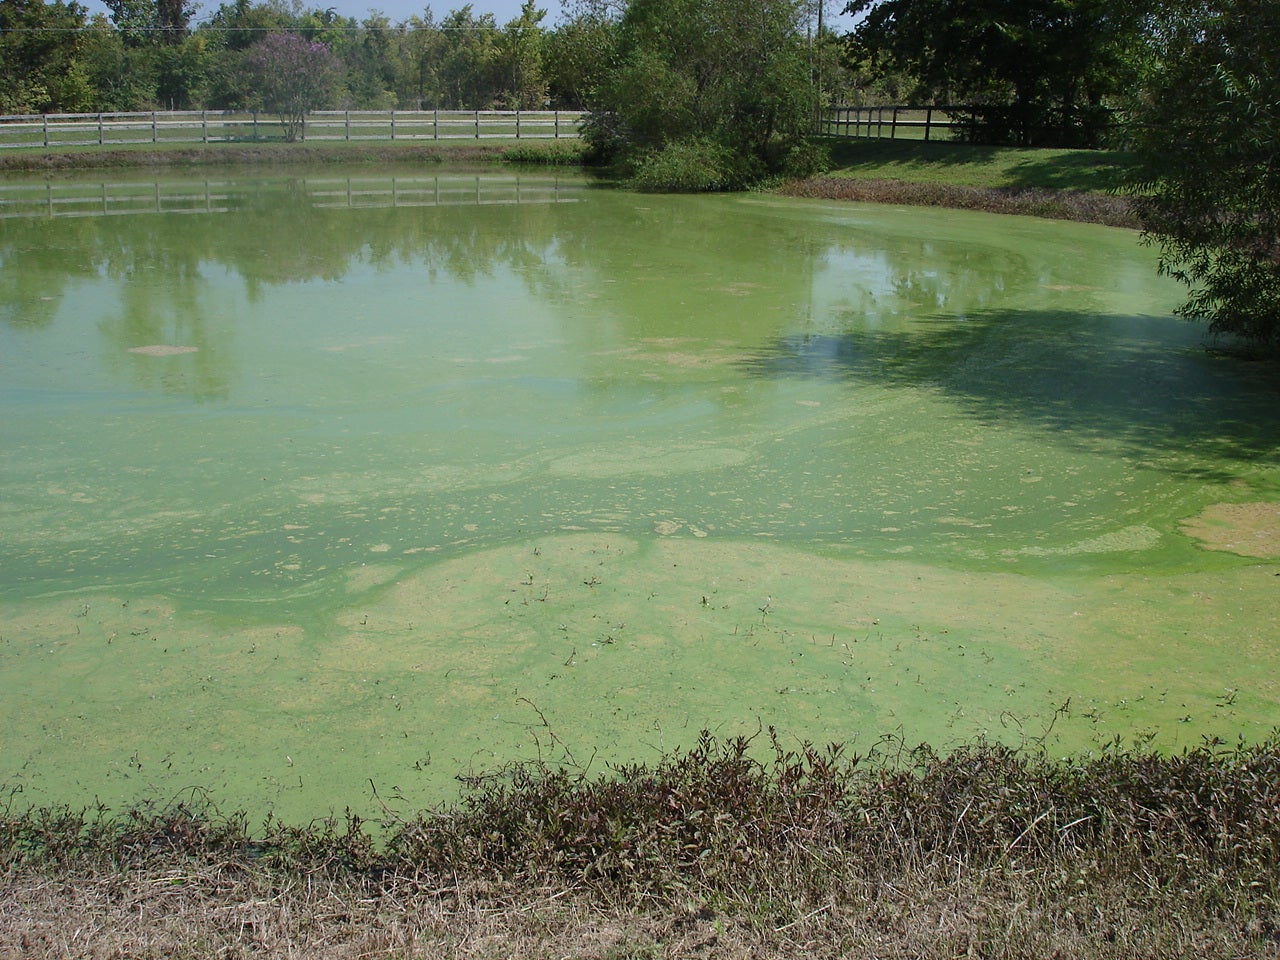 Blue-Green Algae